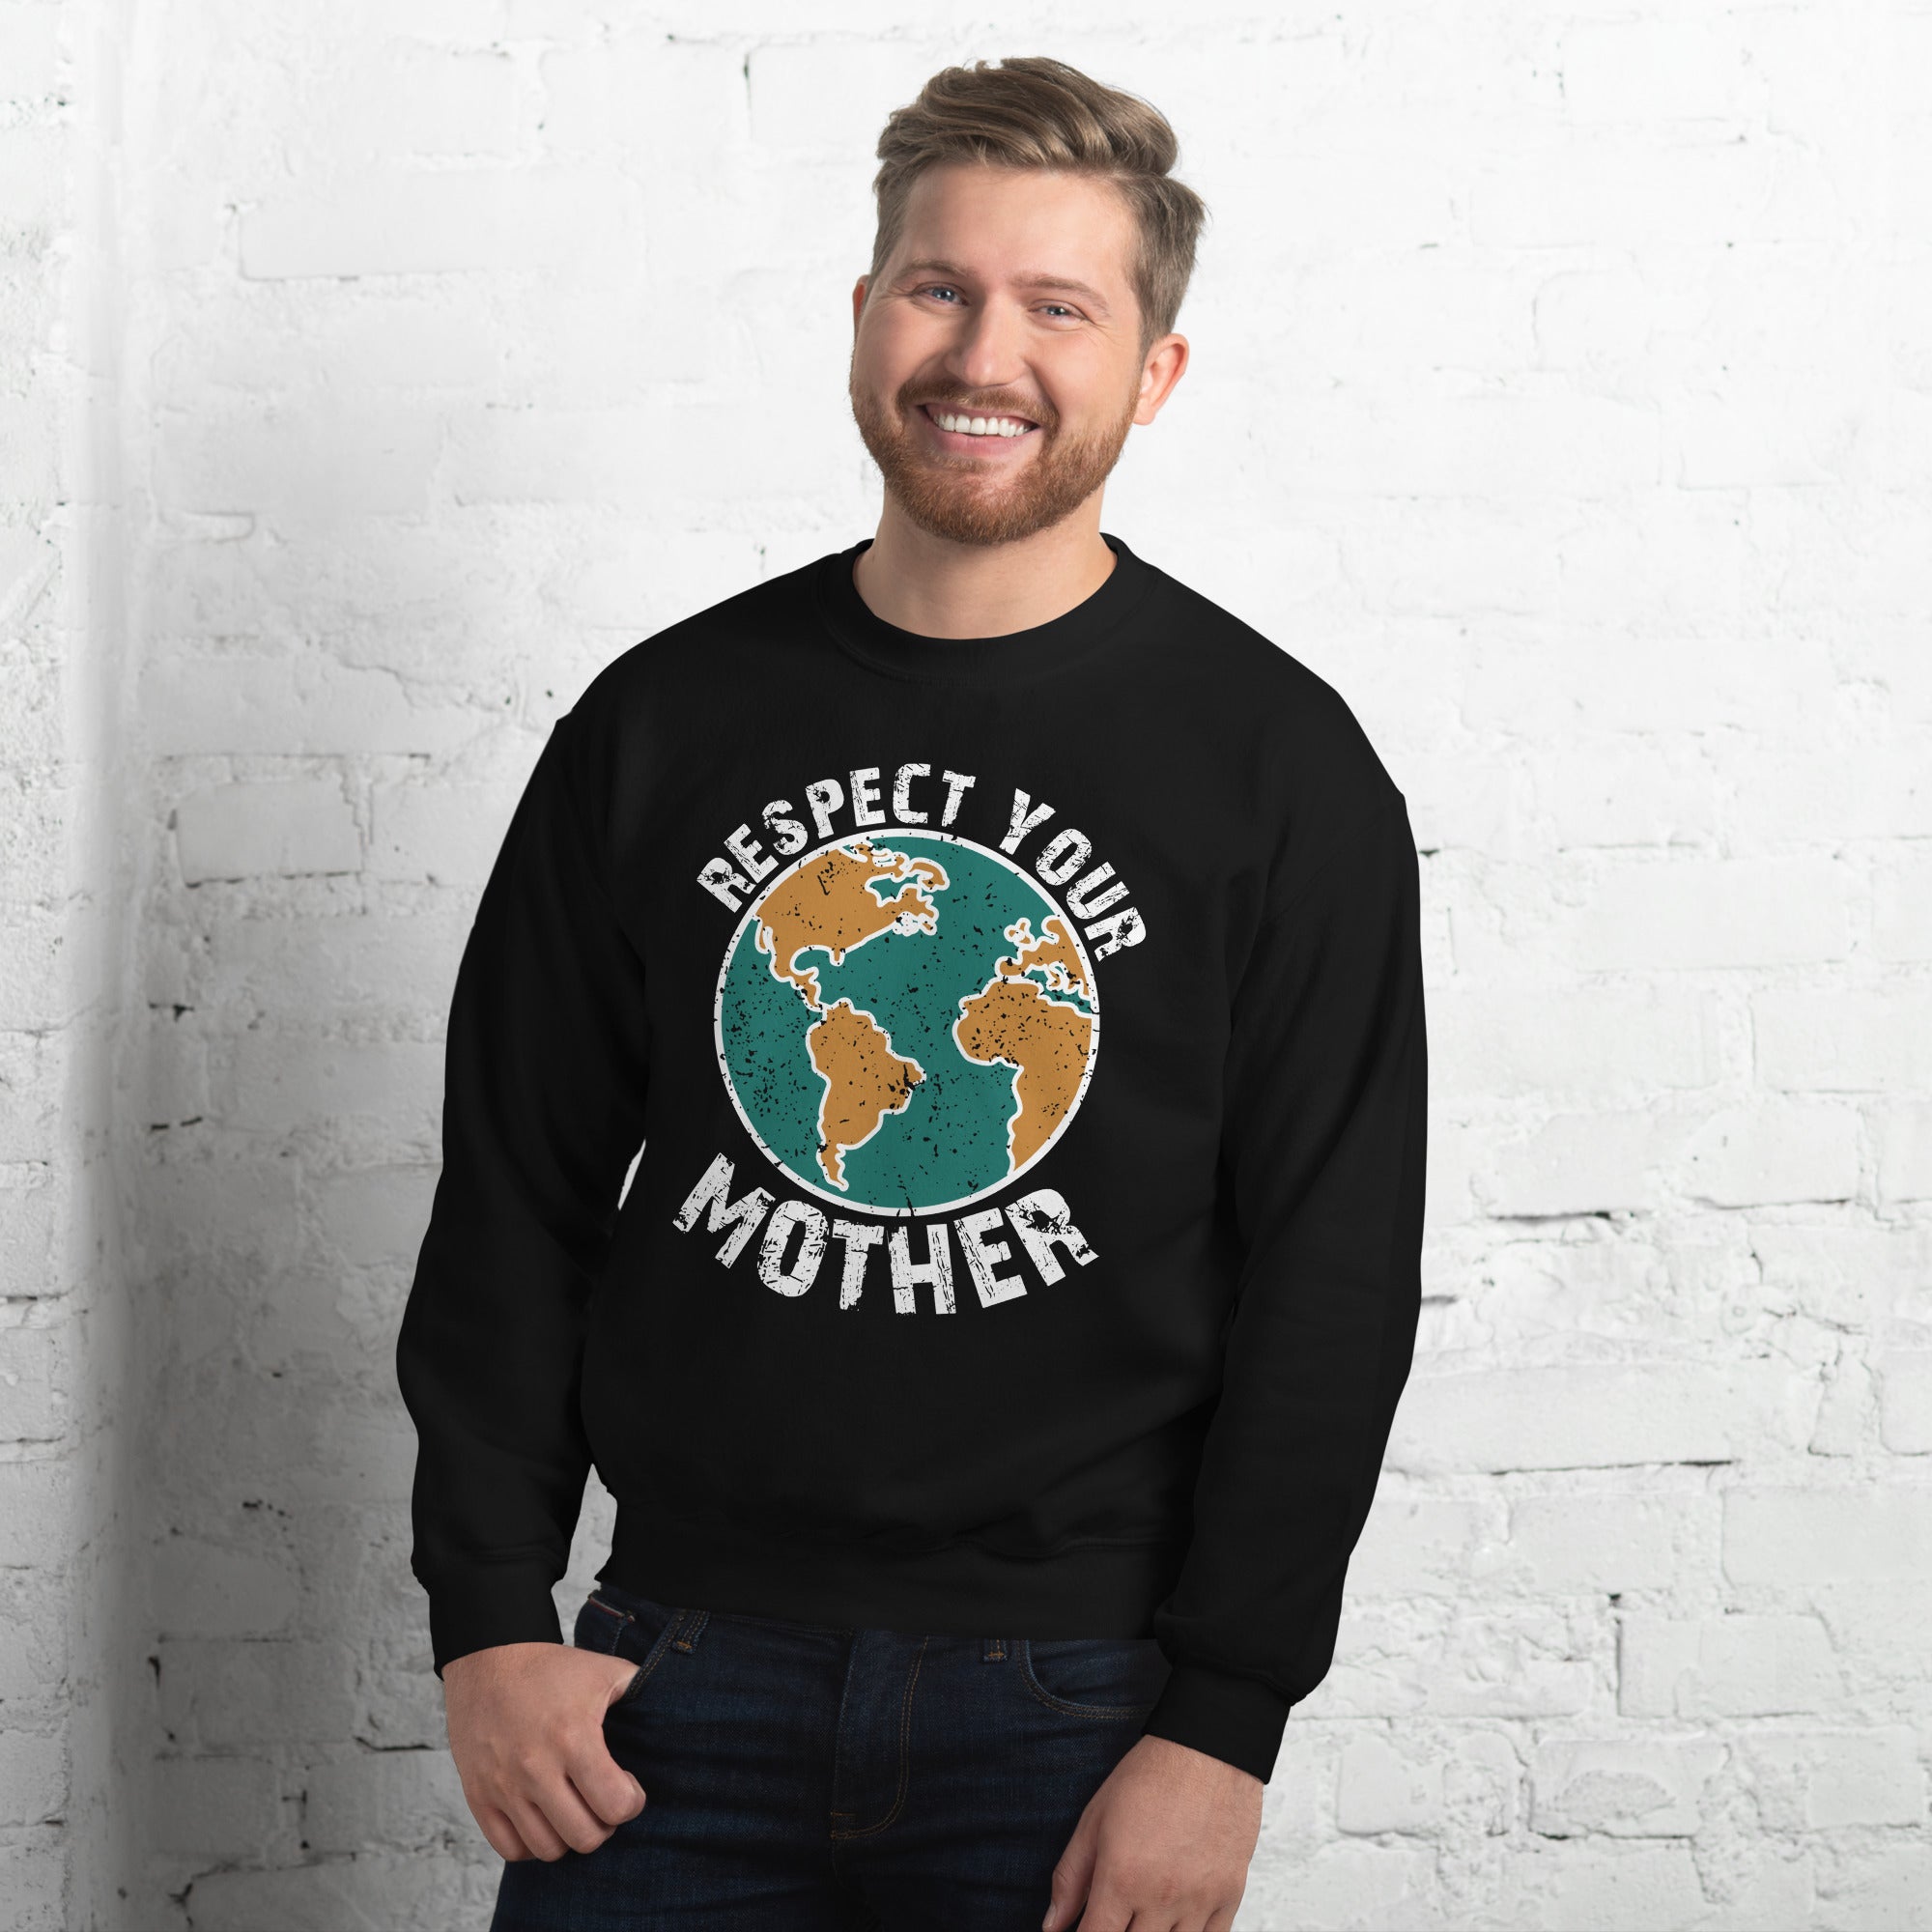 Respect Your Mother Men's Sweatshirt